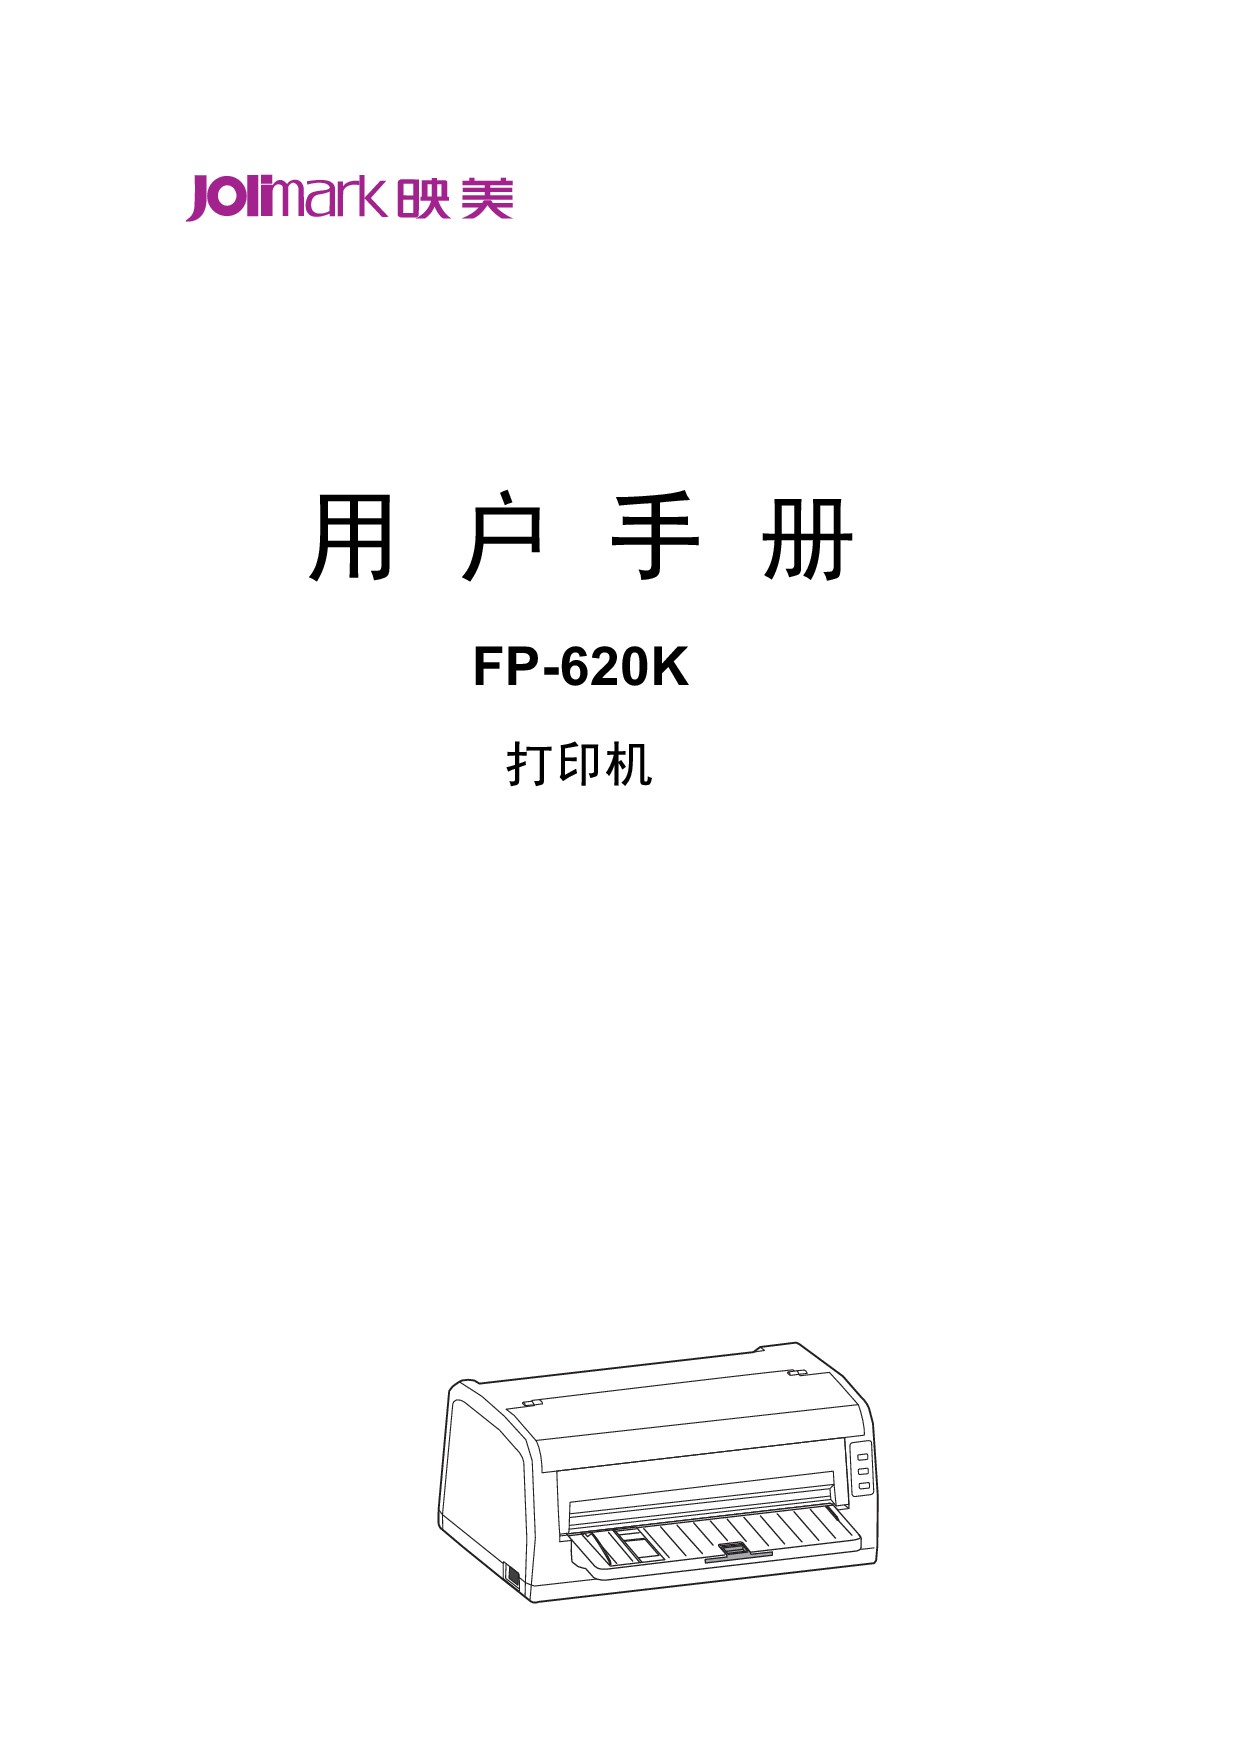 映美 Jolimark FP-620K 用户手册 封面